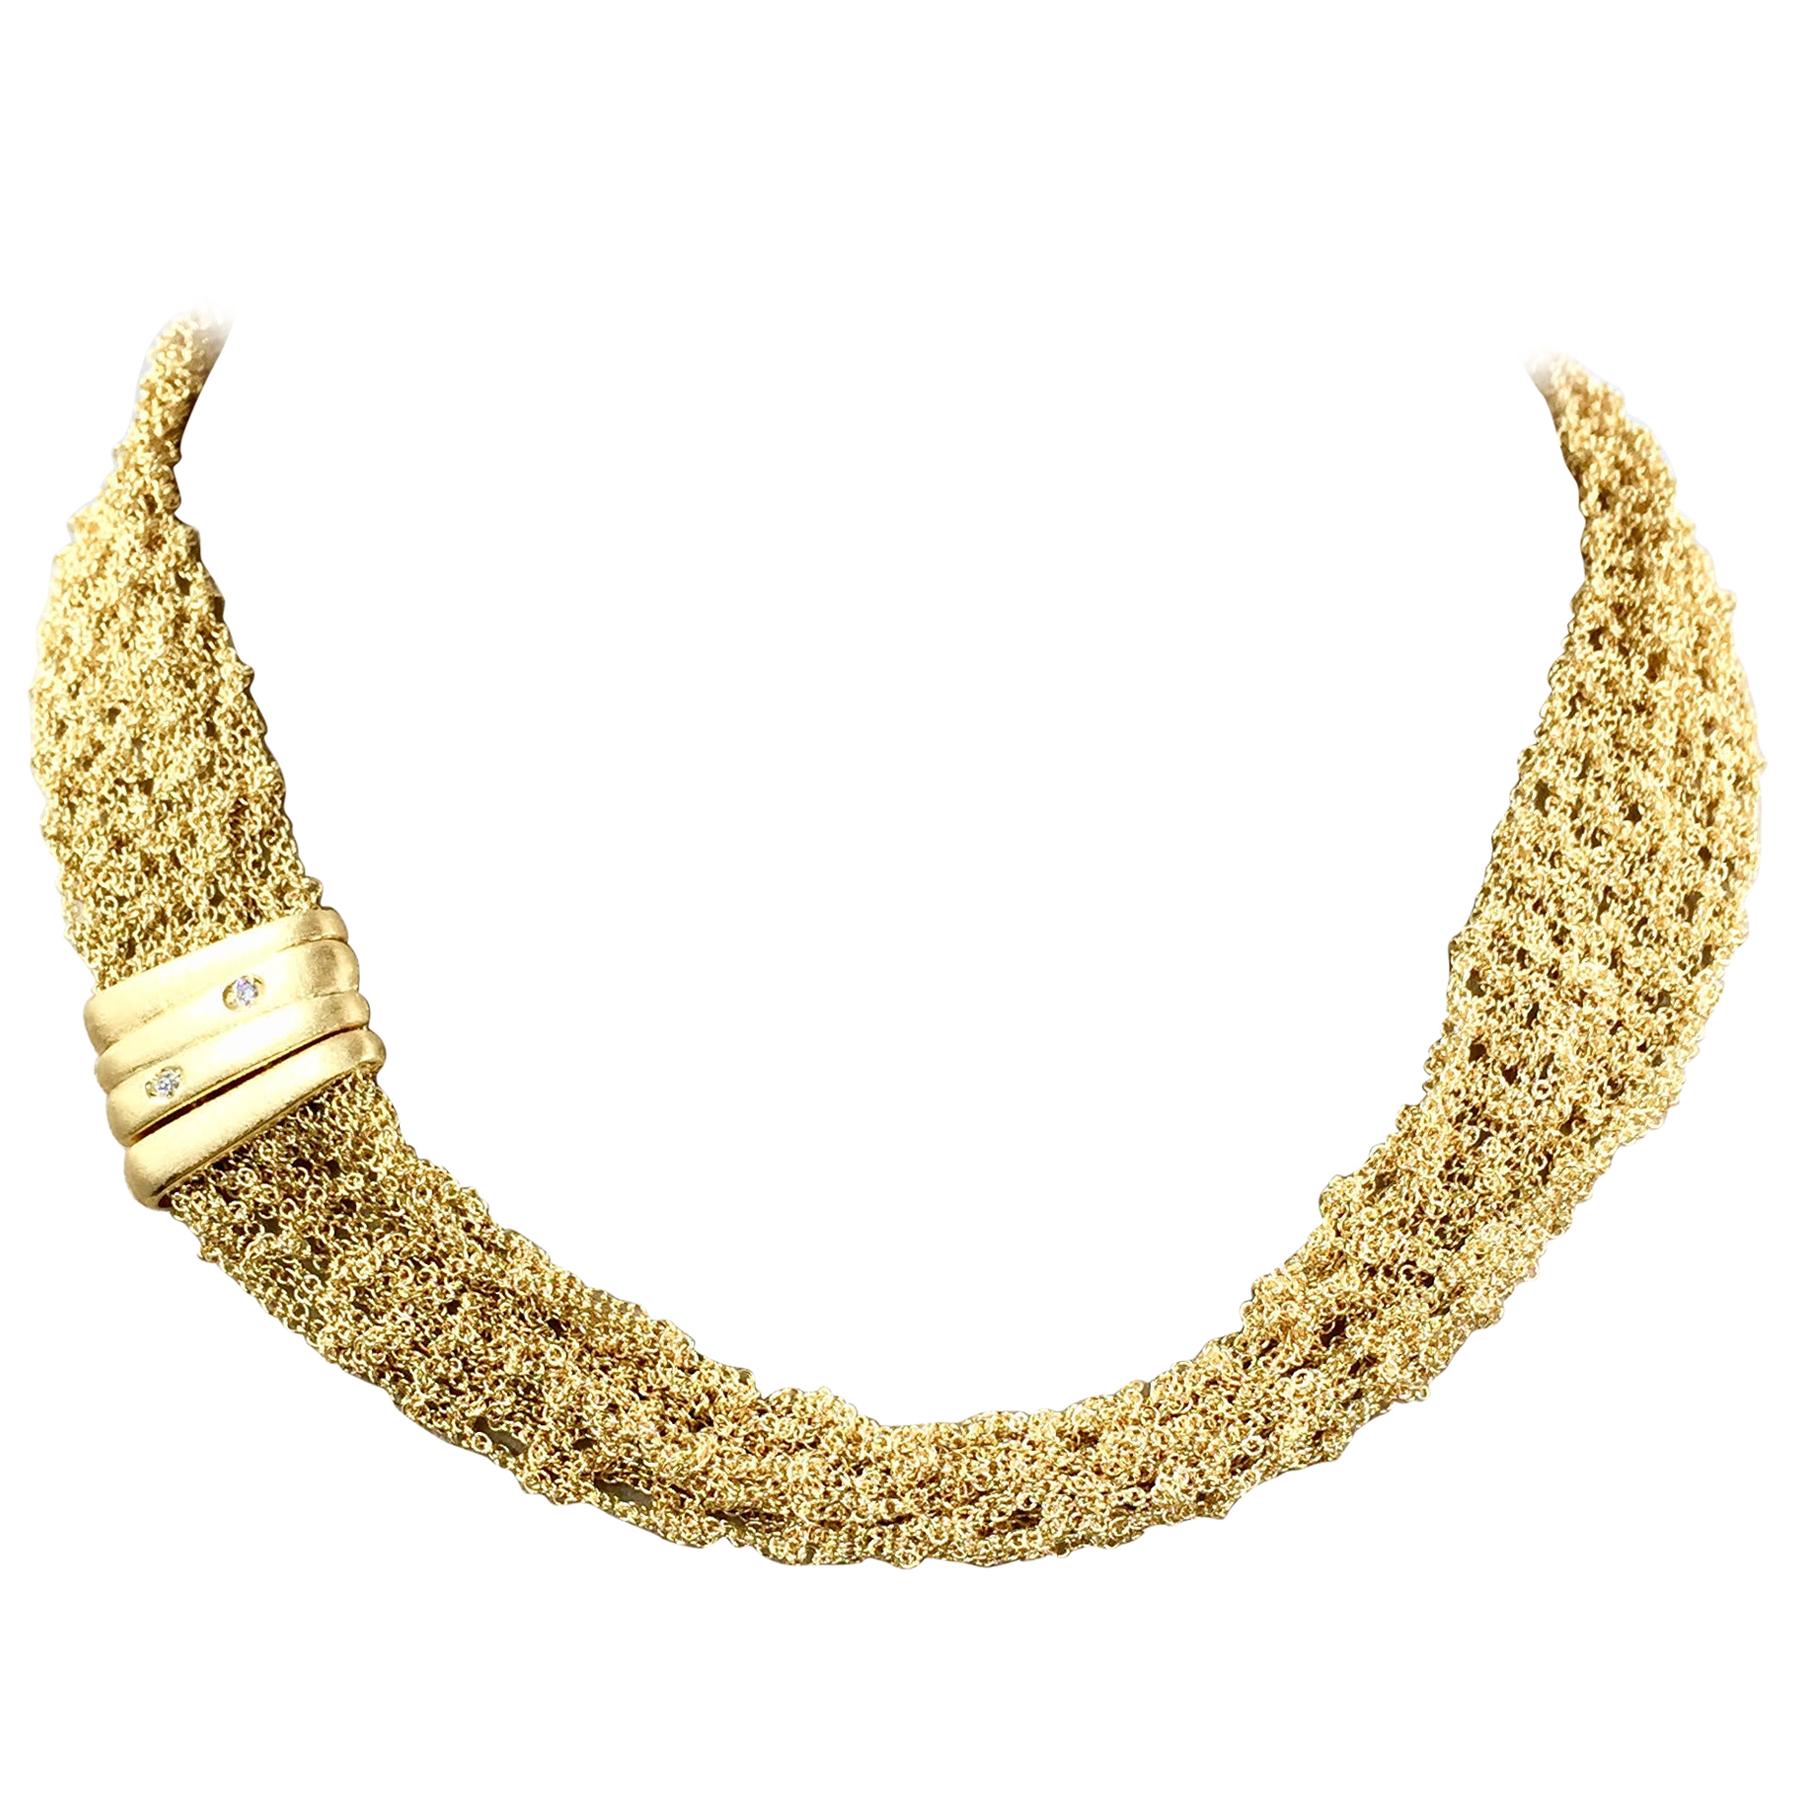 Vintage 18 Karat Yellow Gold Mesh Necklace